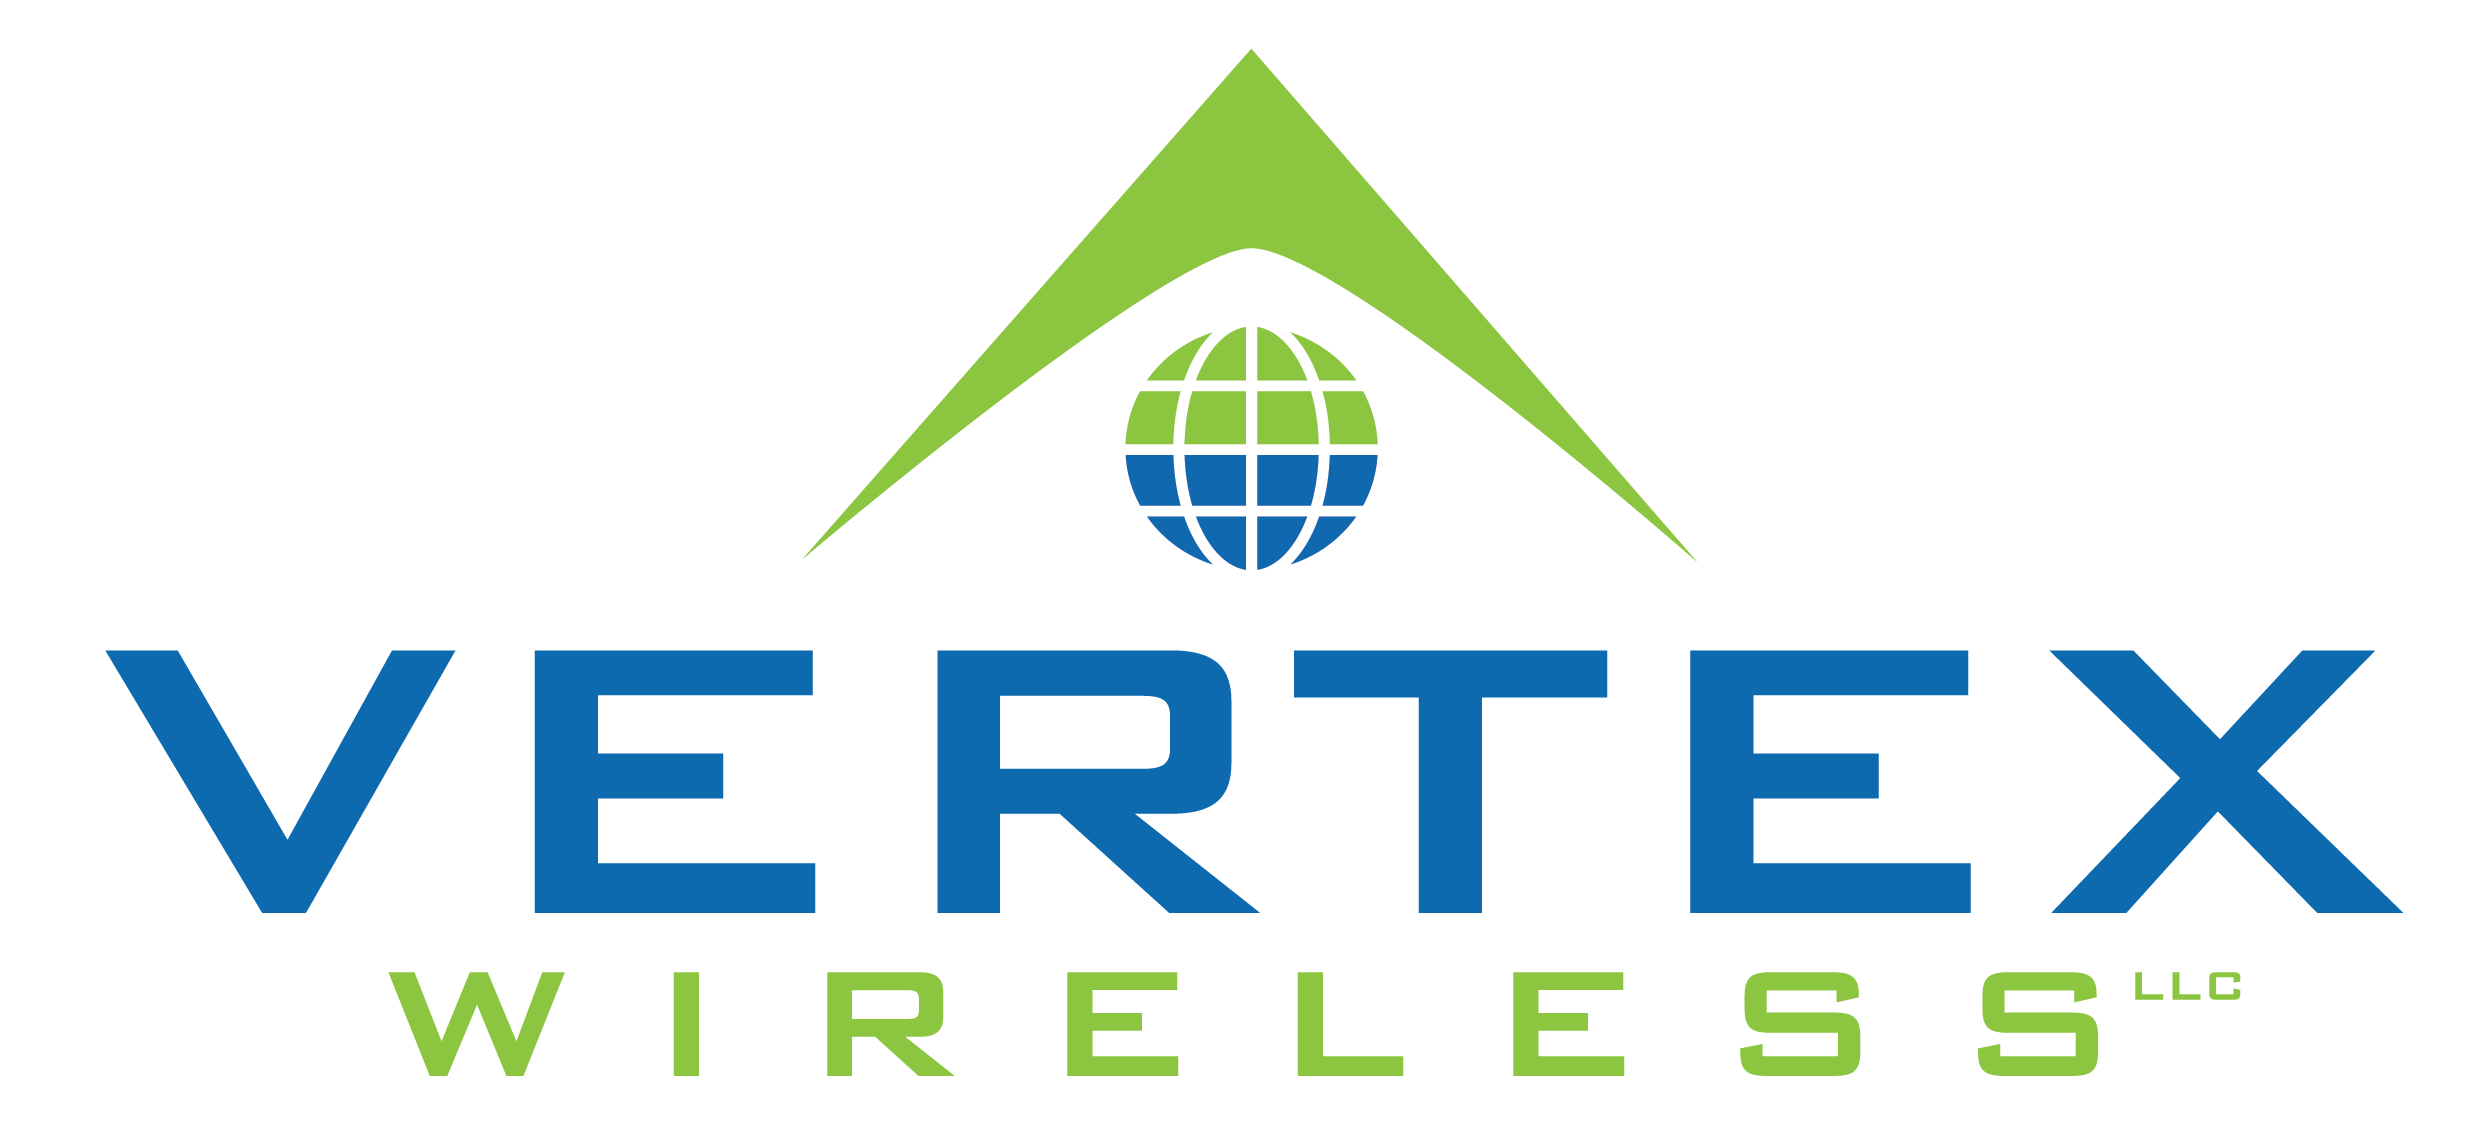 Vertex Wireless